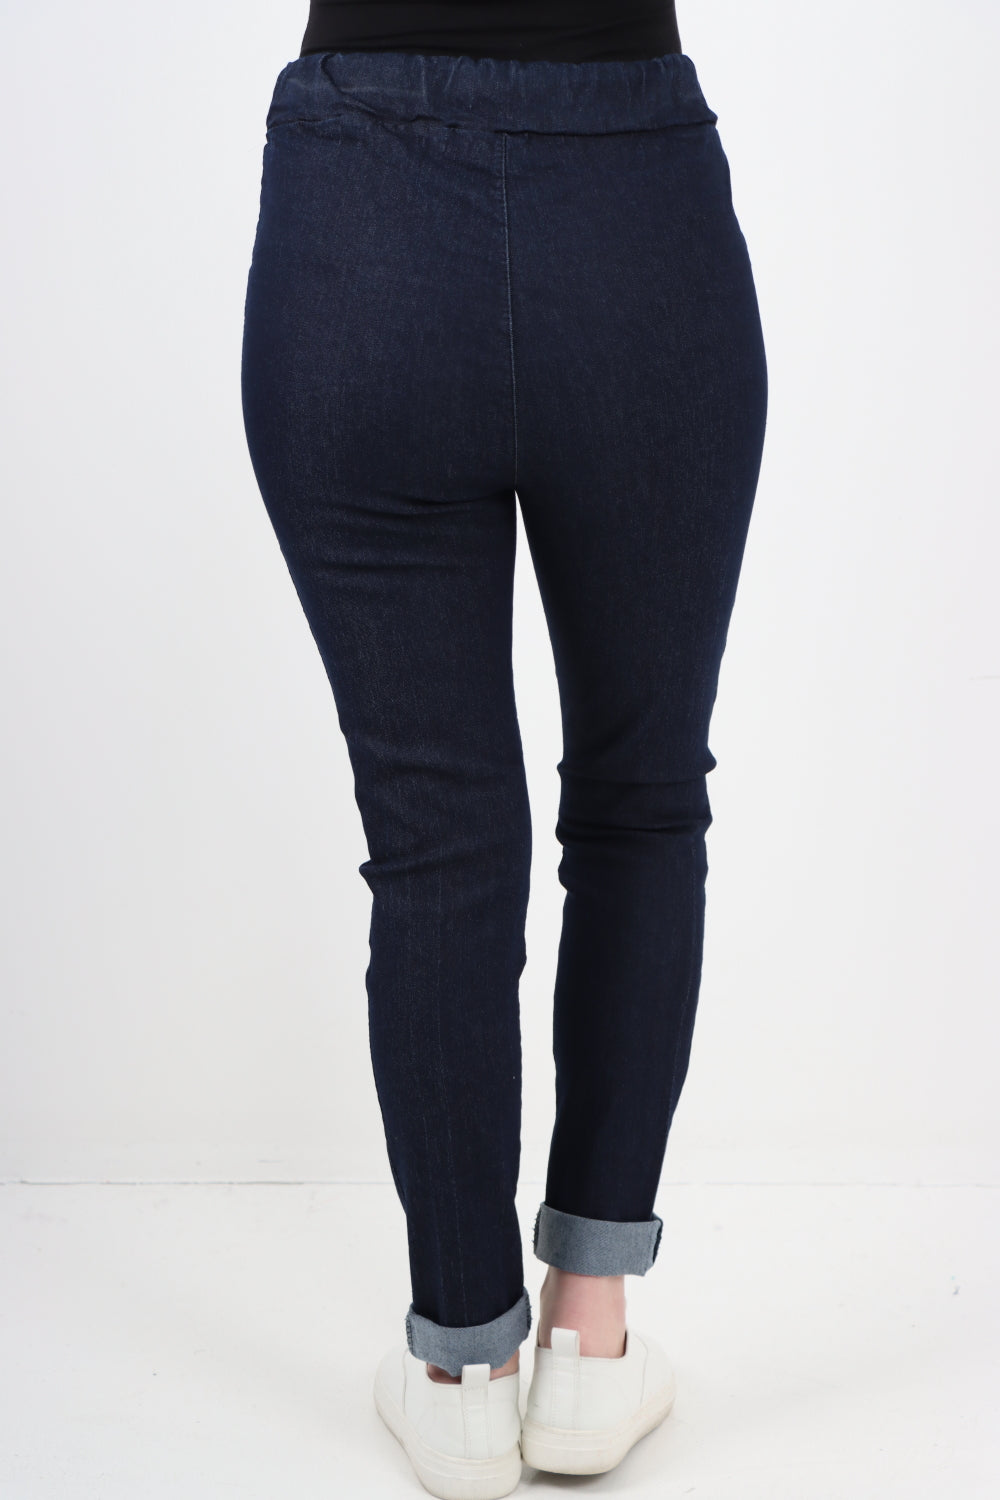 Italian Plain Denim Look Side Pockets Jeans Trouser